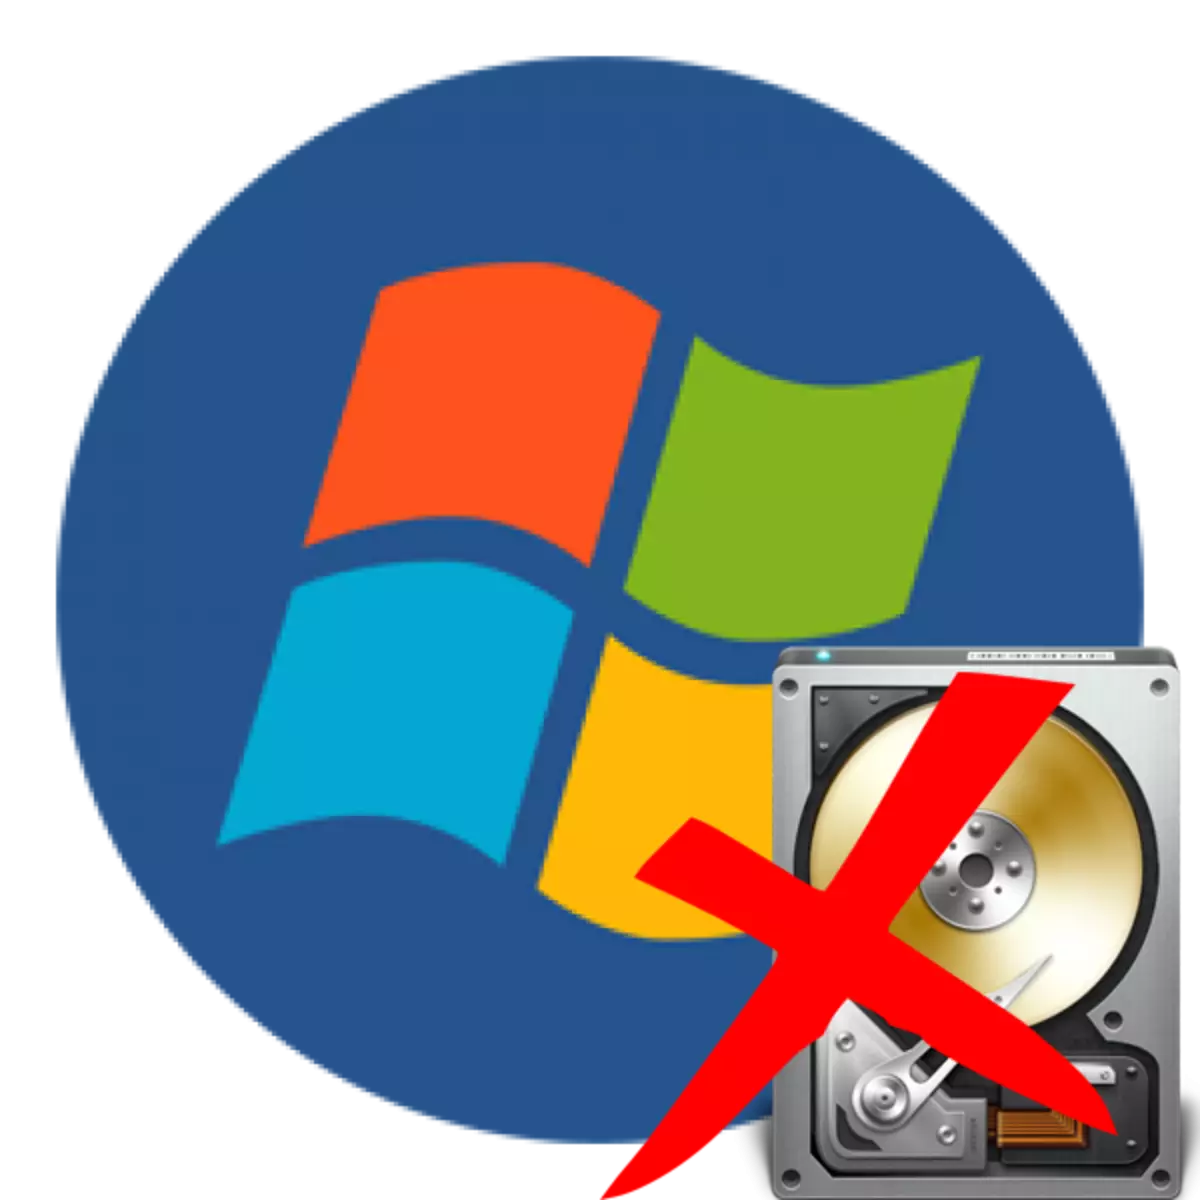 Windows 7 qattiq diskni ko'rmasa nima qilish kerak